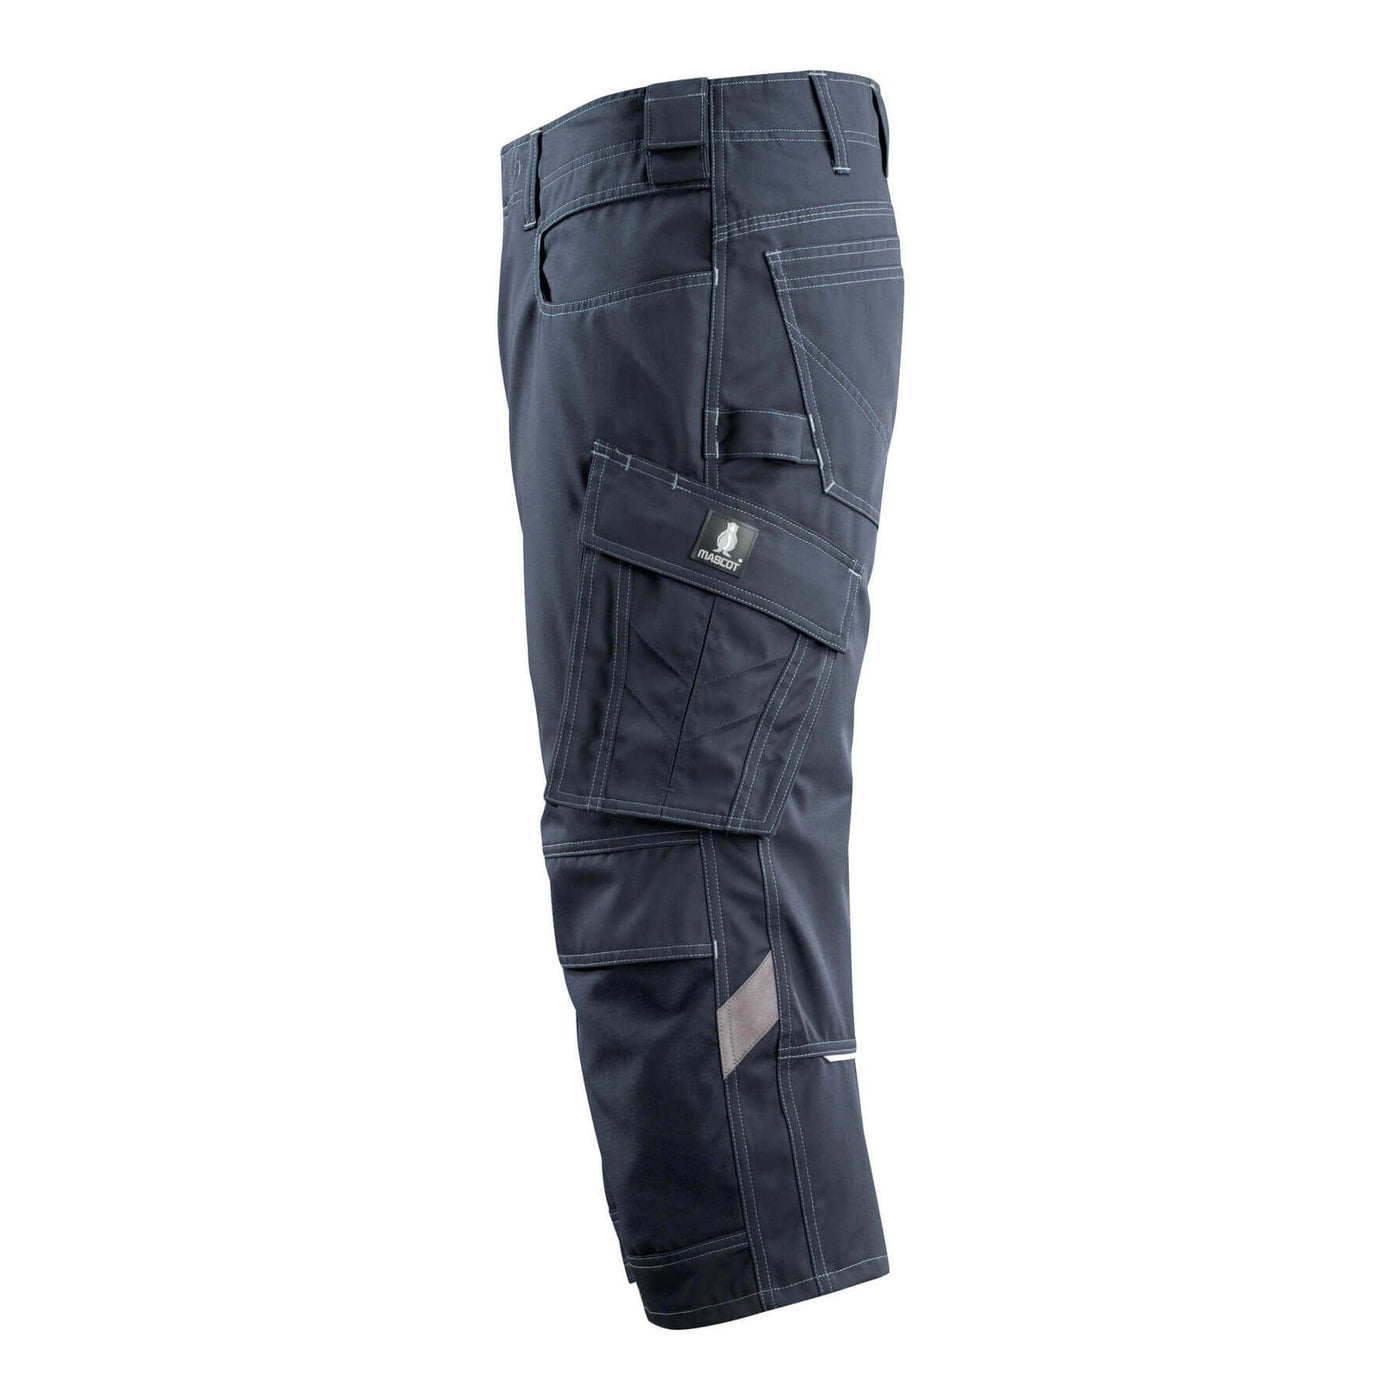 Mascot Altona 3-4 Trousers Kneepad-Pockets 14249-442 Right #colour_dark-navy-blue